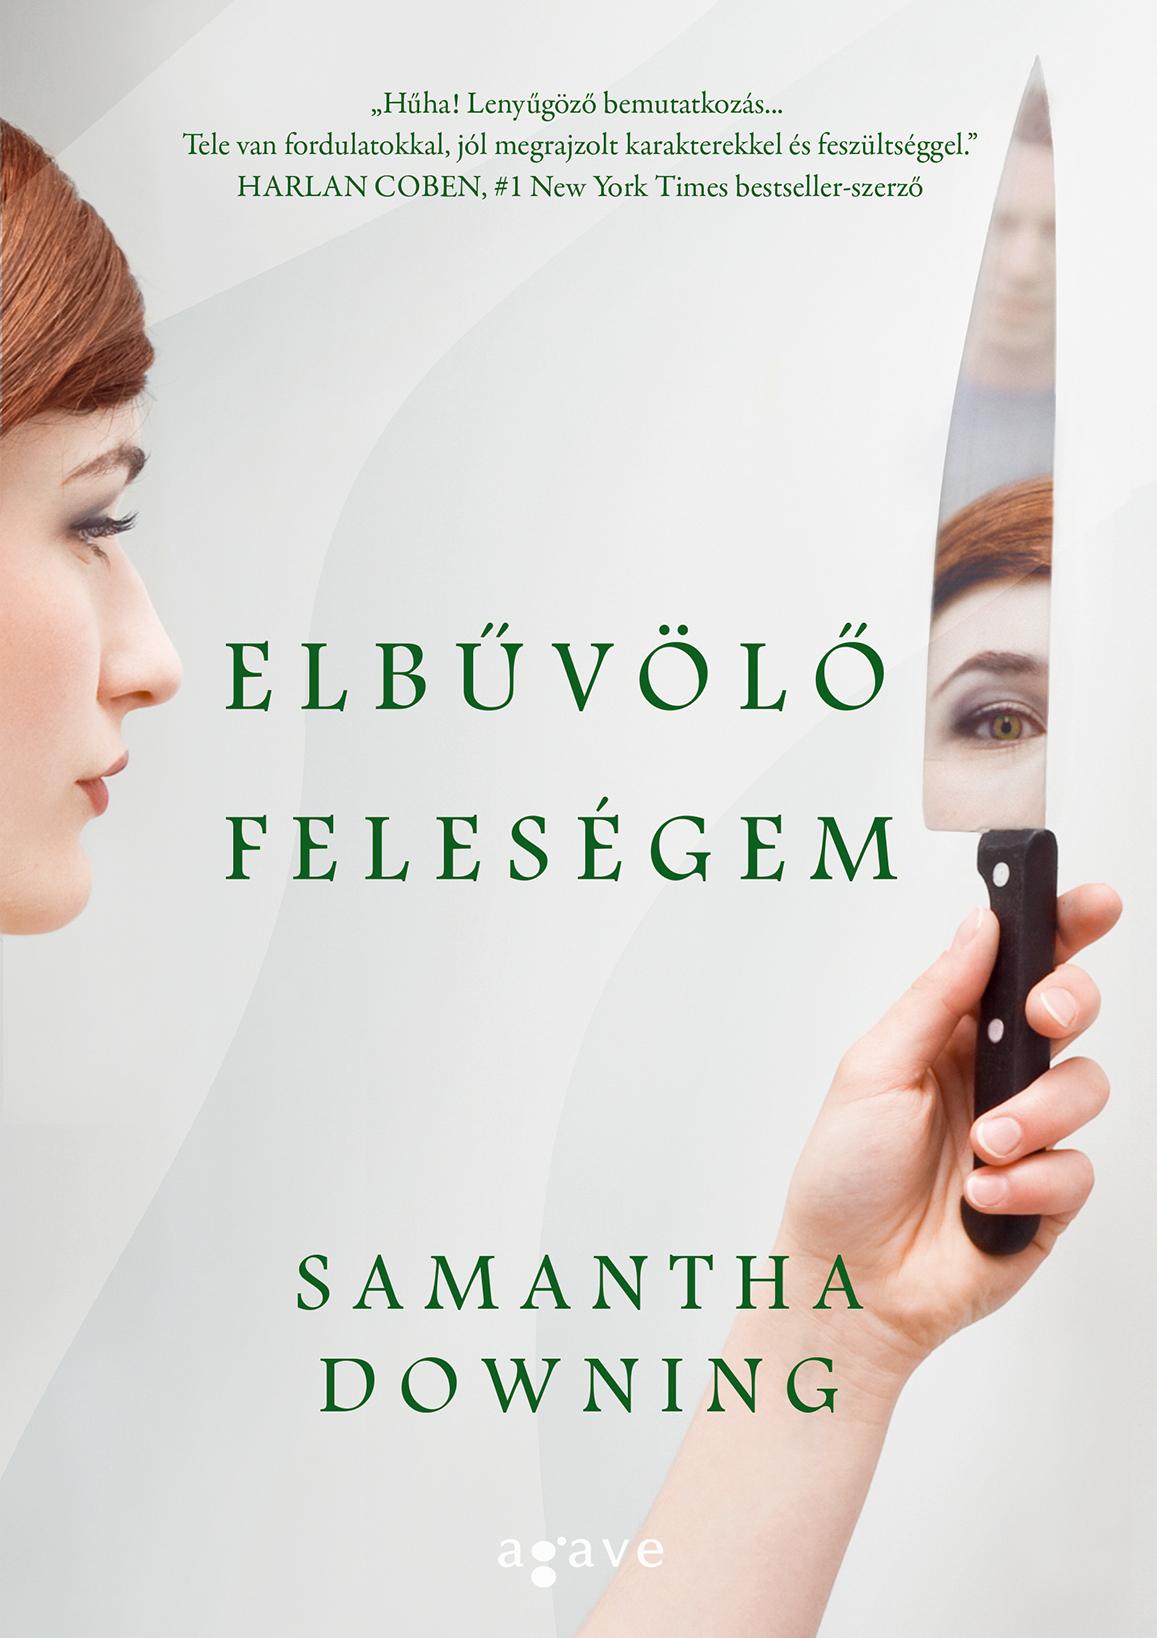 DOWNING, SAMANTHA - ELBVL FELESGEM